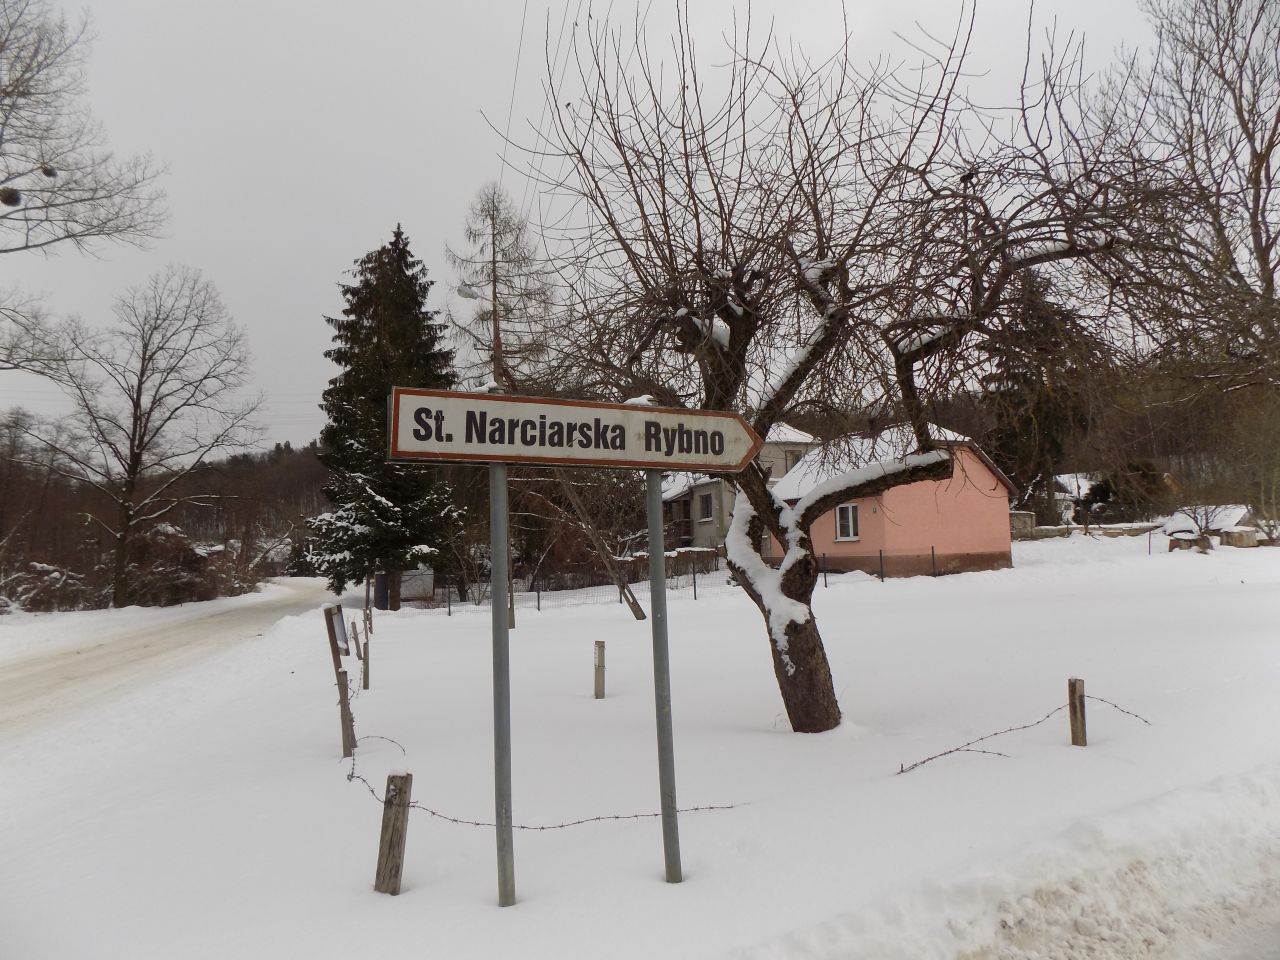 Kierunkowskaz prowadzący do stacji narciarskiej Rybno